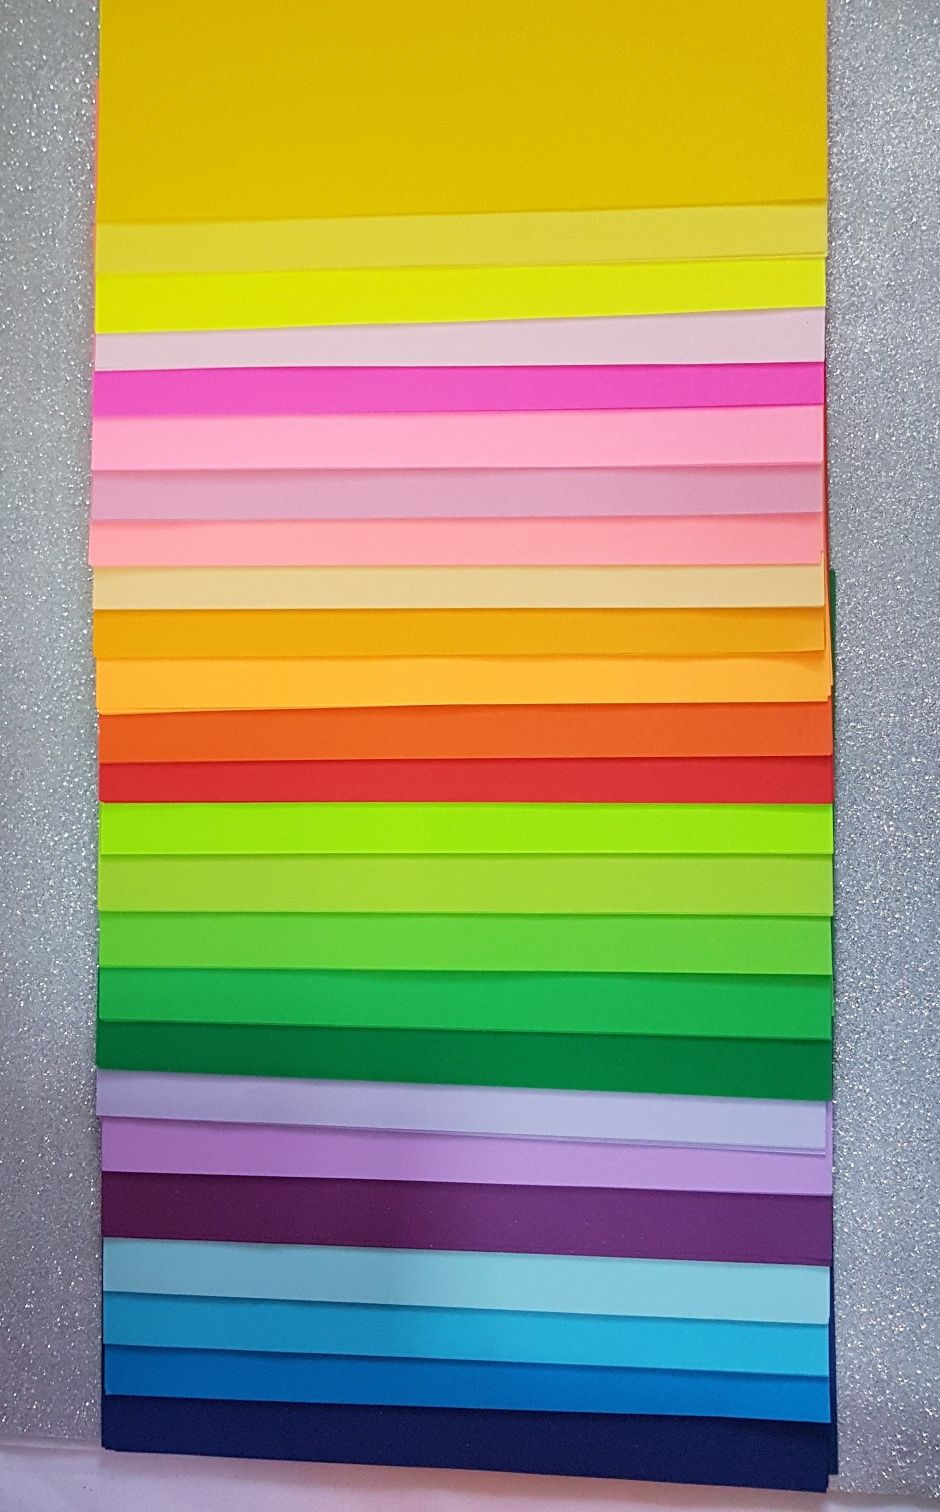 Папір кольоровий Ф-А4 двосторонній 80г Цветная бумага